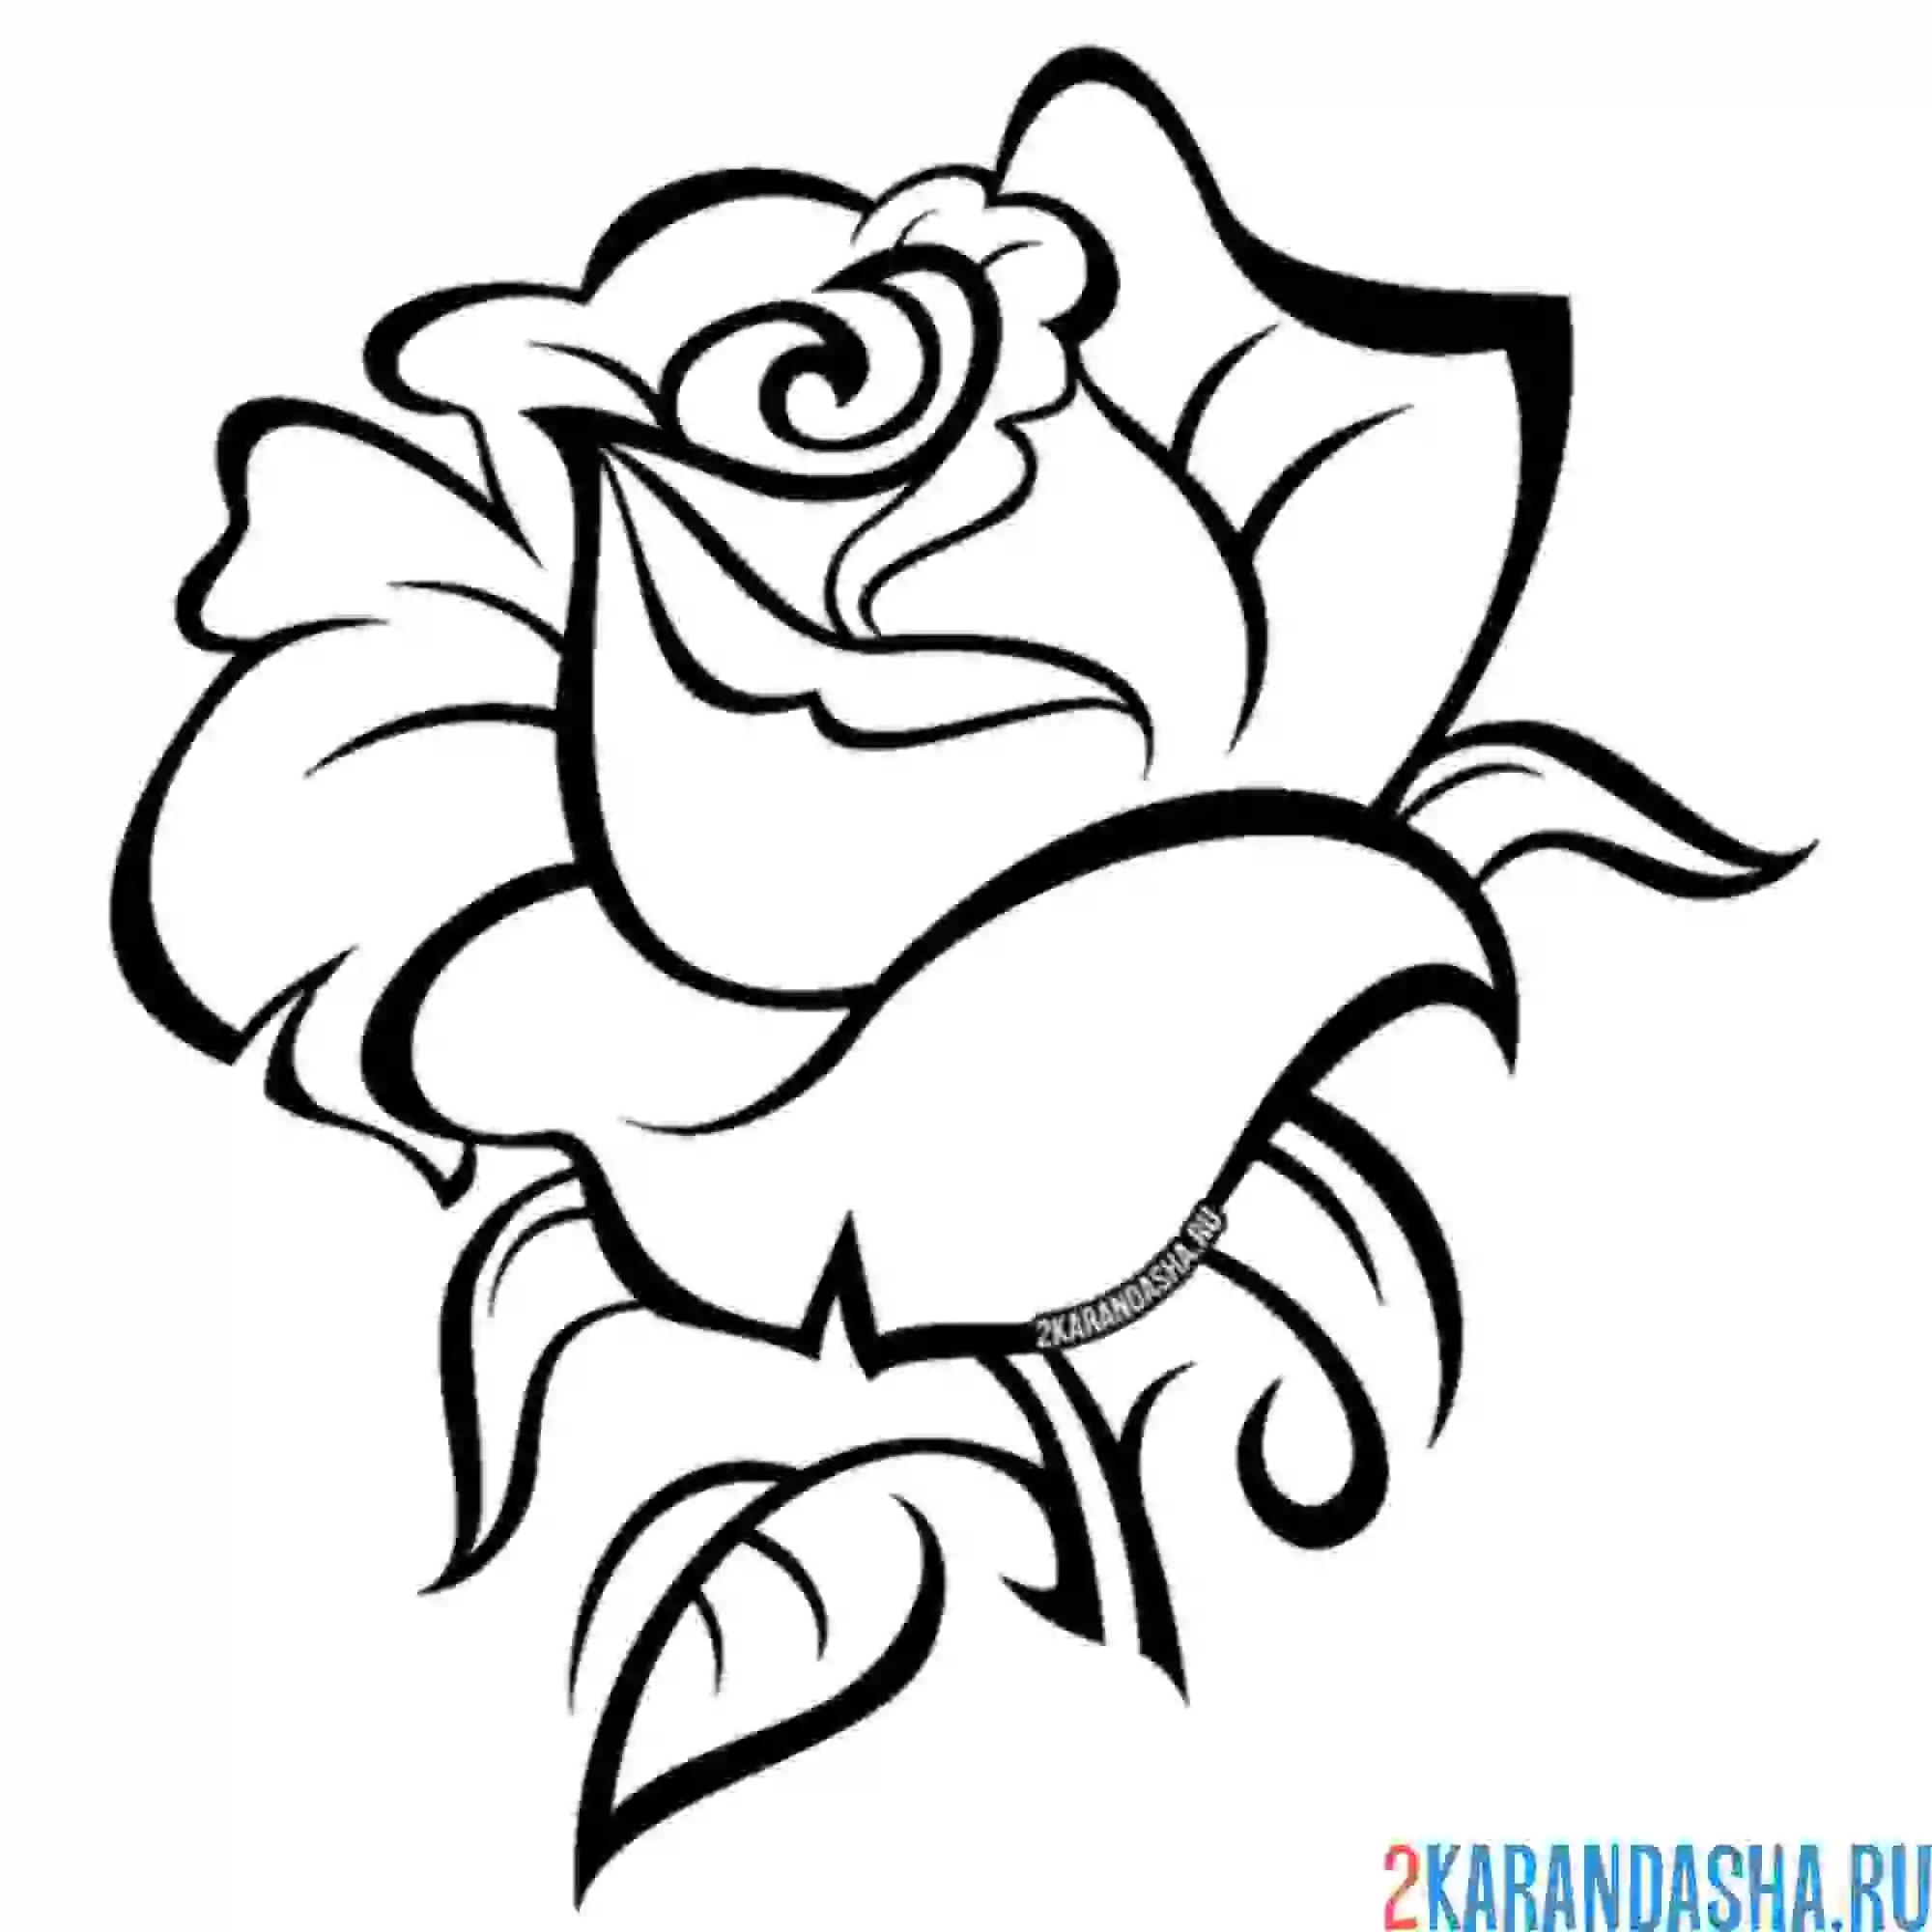 Раскраска бутон шикарной розы